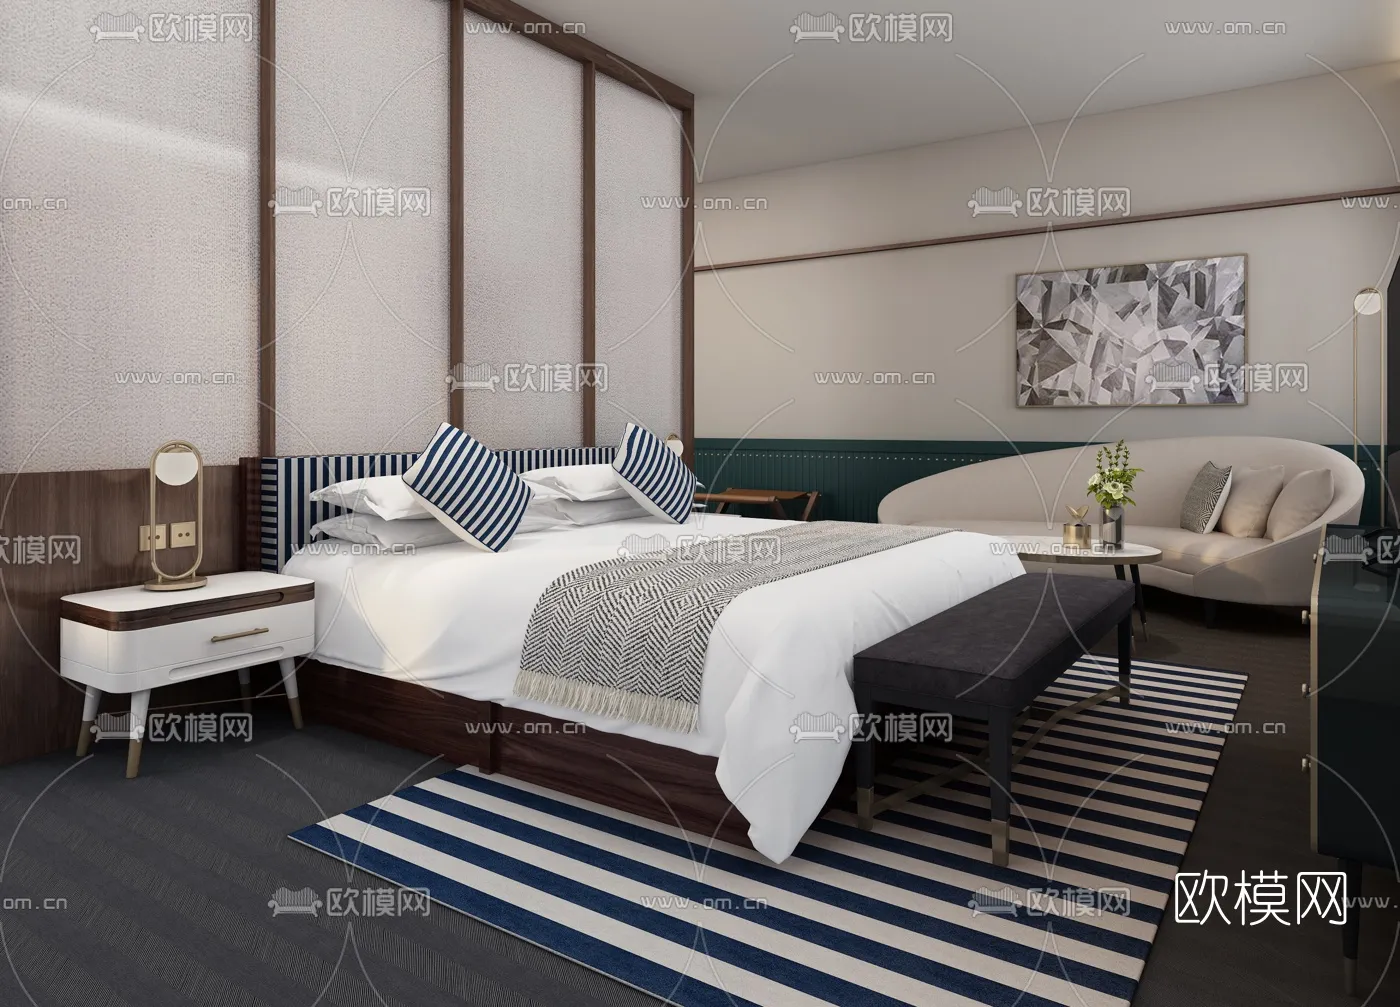 Hotel Room – Bedroom For Hotel 3D Models – 001